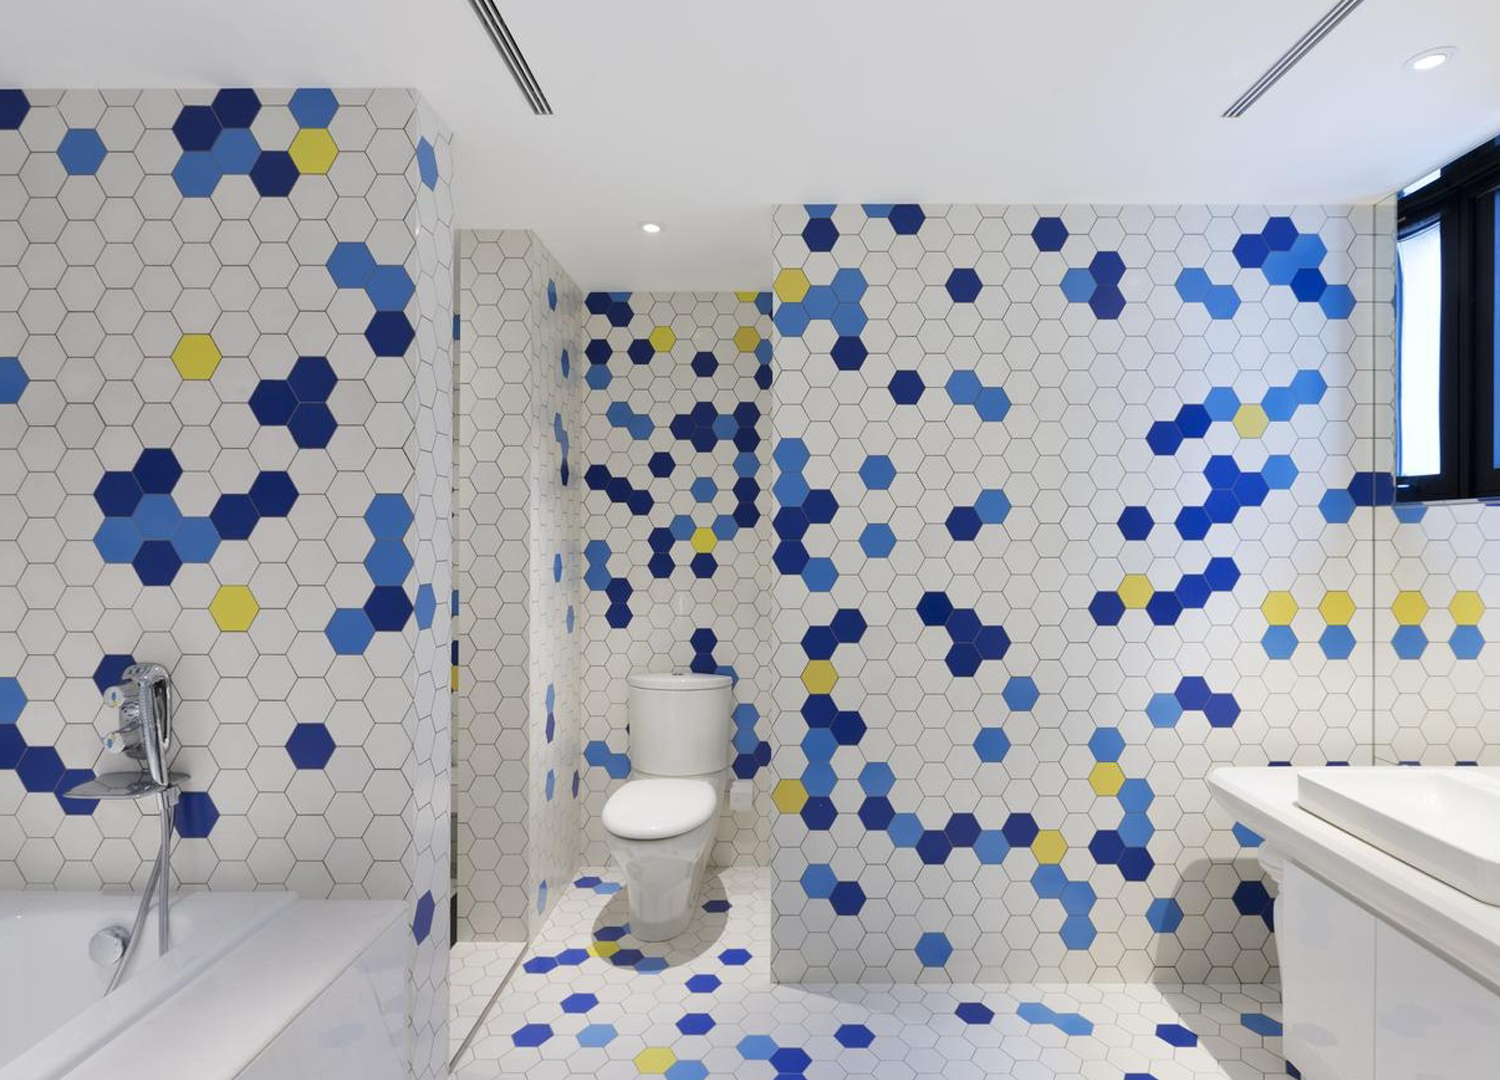 整体卫浴间由六边形马赛克瓷砖构成，空间明亮大气。布局兼顾浴缸、淋浴房、洗漱区，合理设计，非常自然清爽。